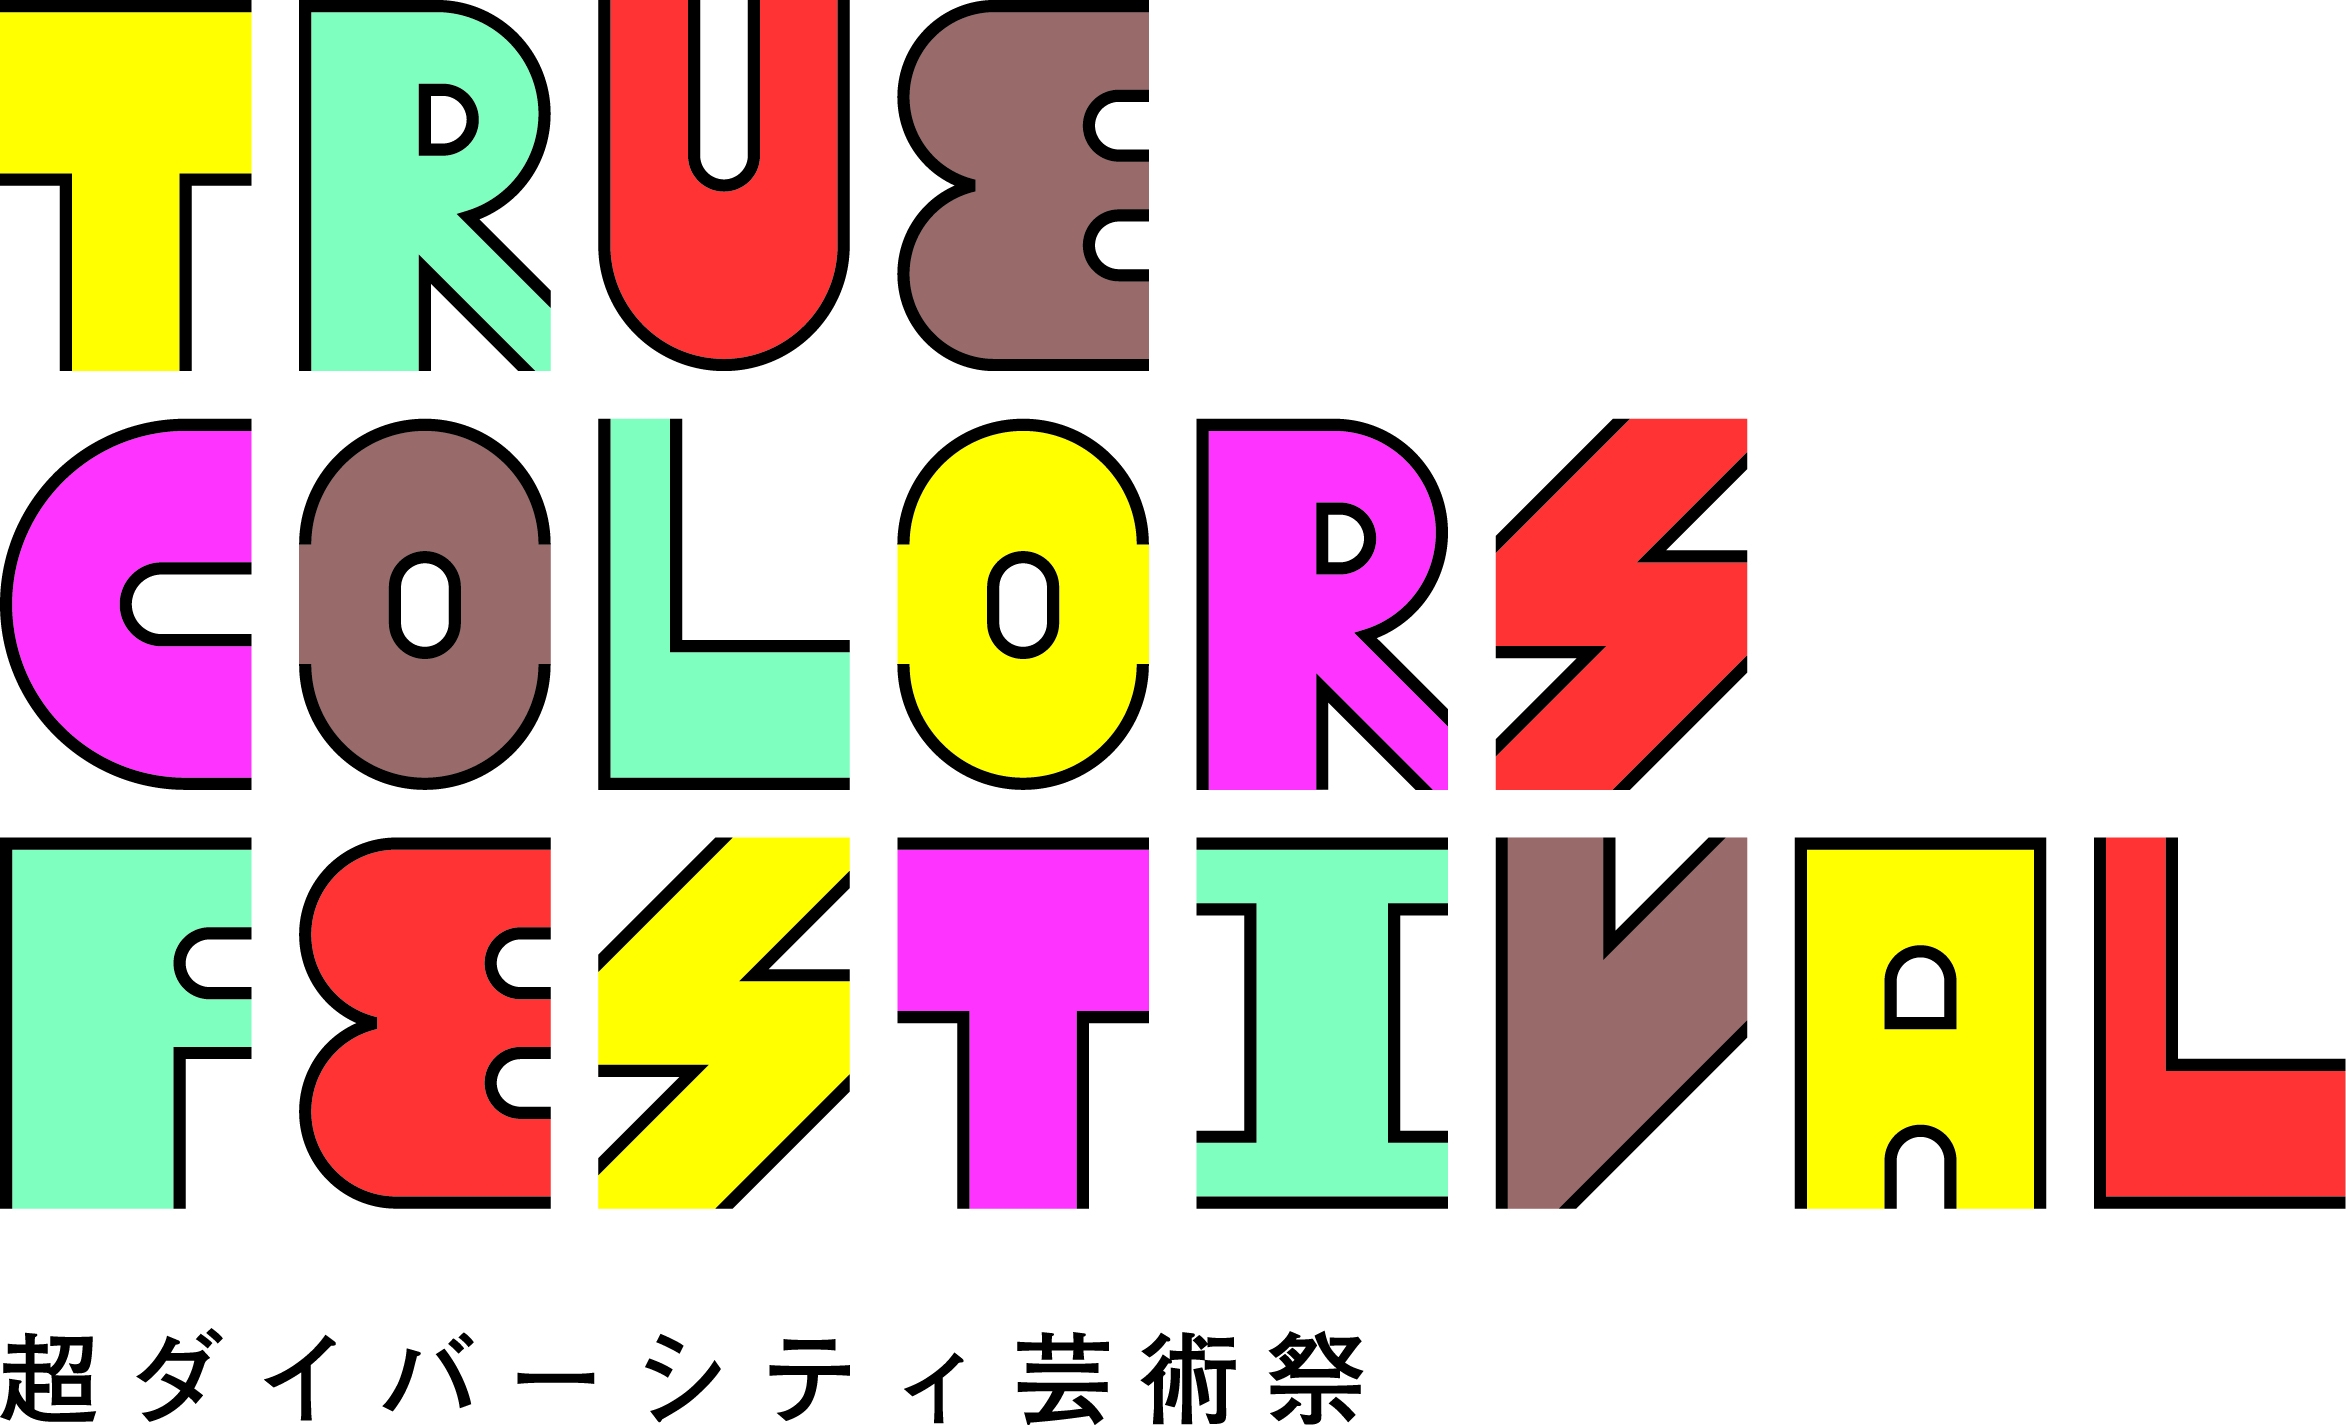 True Colors Festival - 超ダイバーシティ芸術祭 -